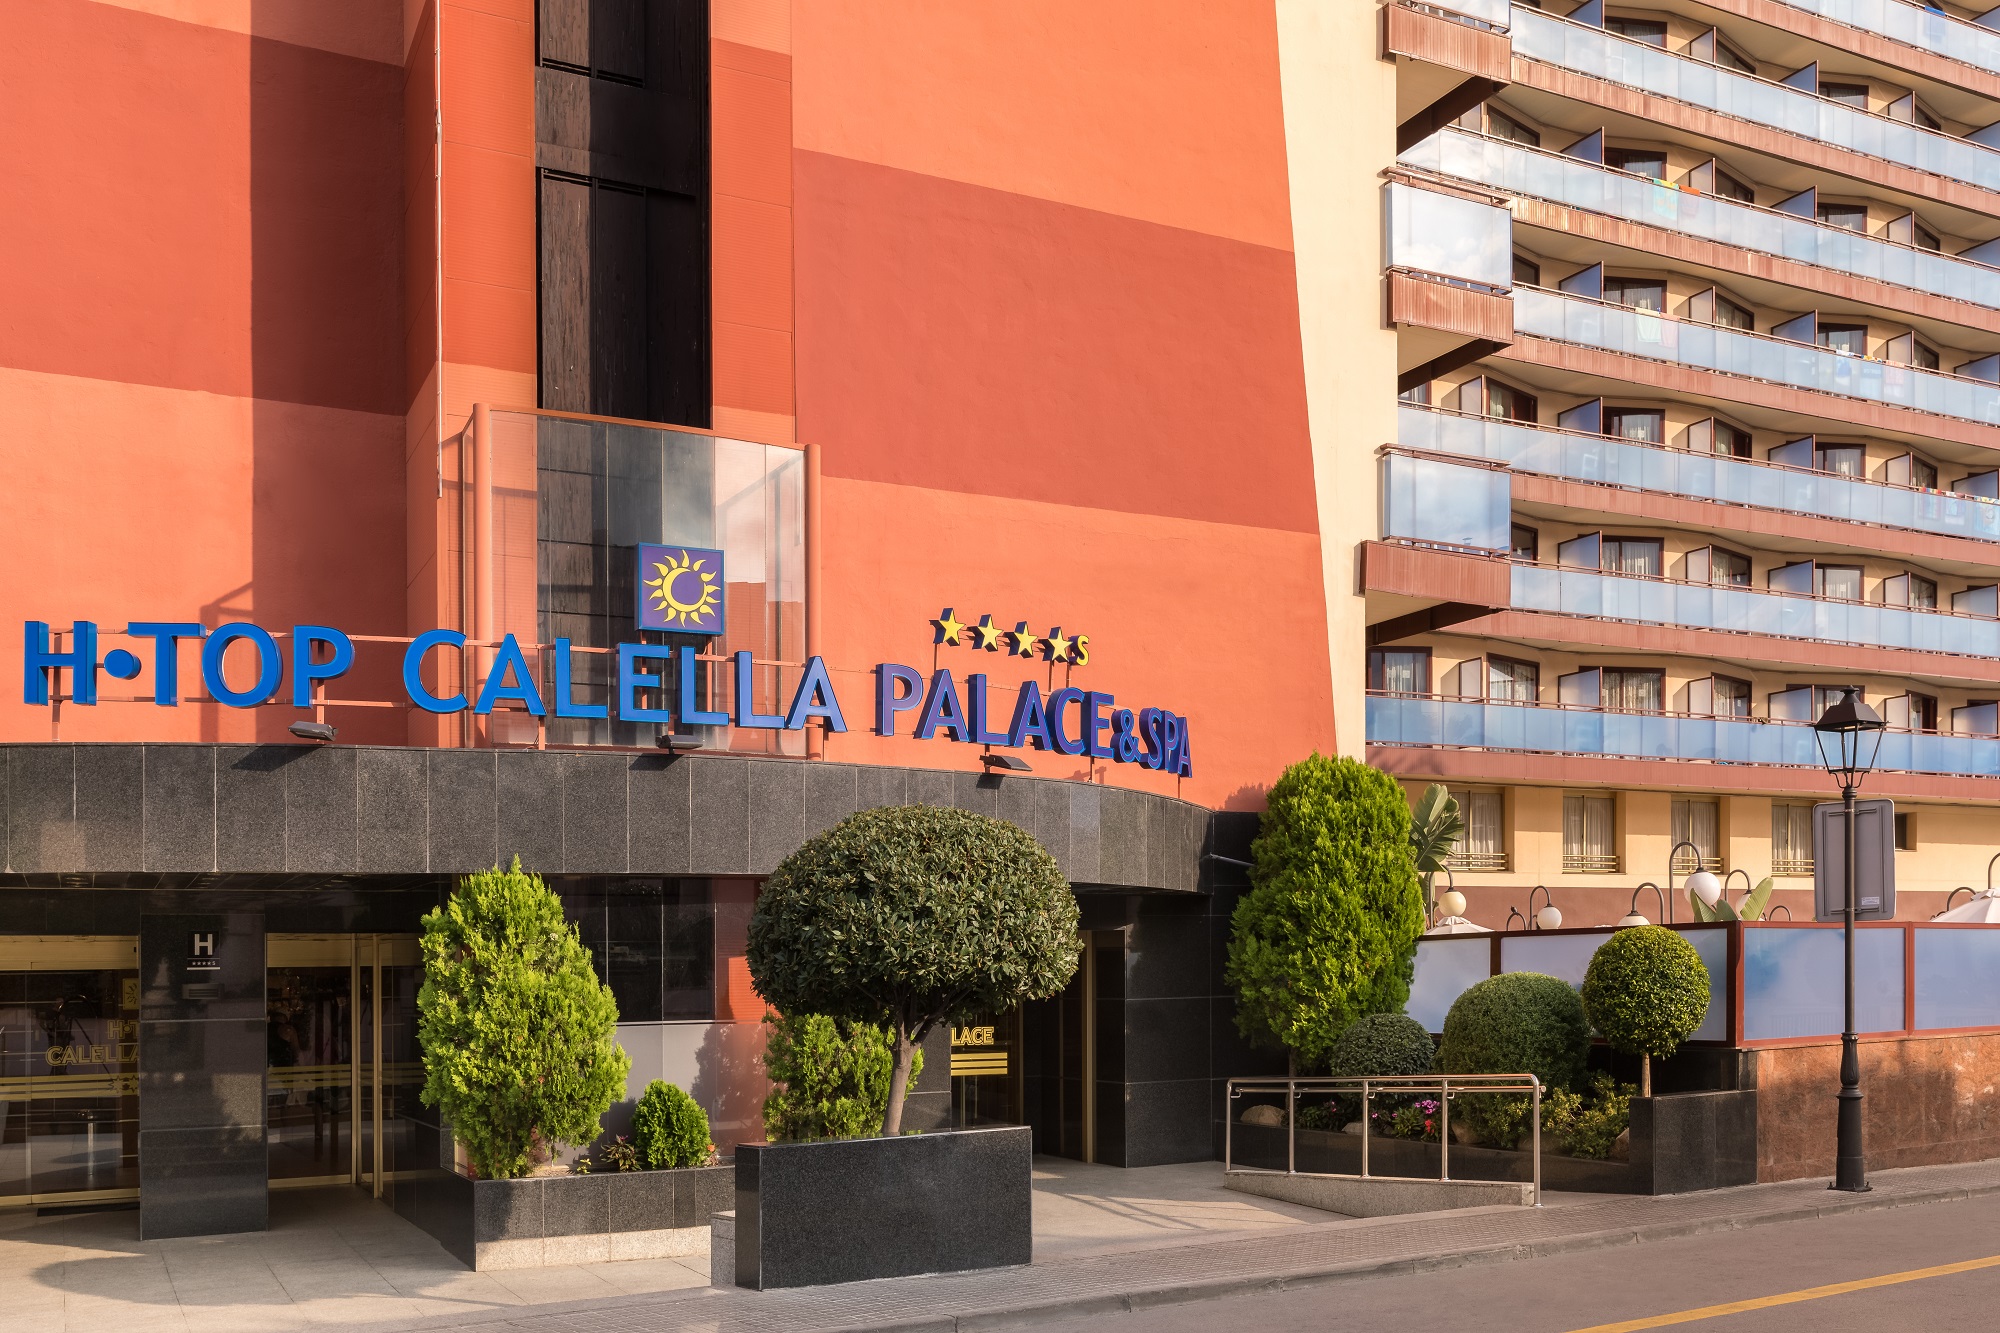 Htop Calella Palace Family & Spa